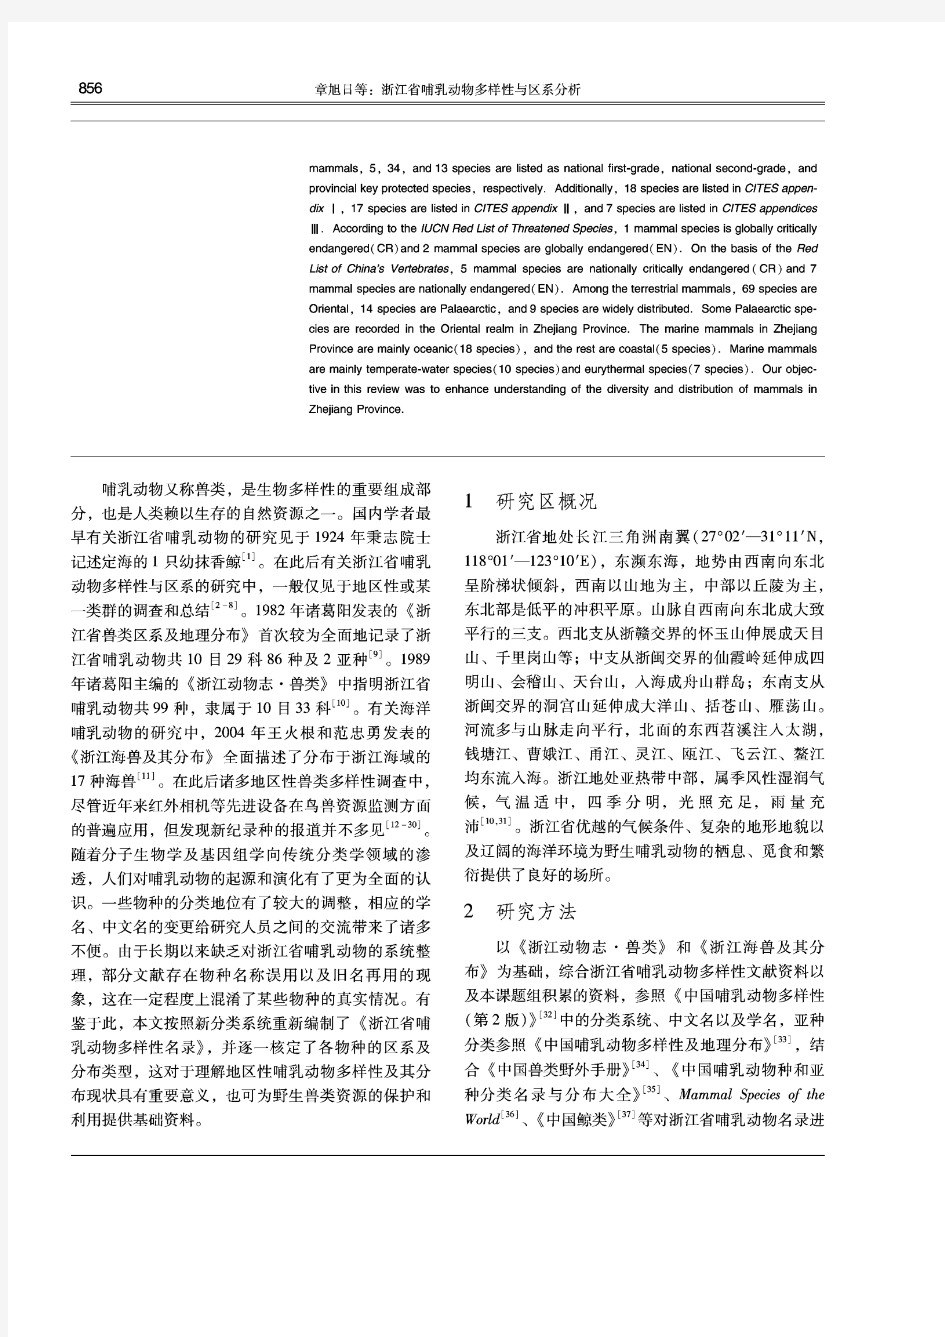 浙江省哺乳动物多样性与区系分析